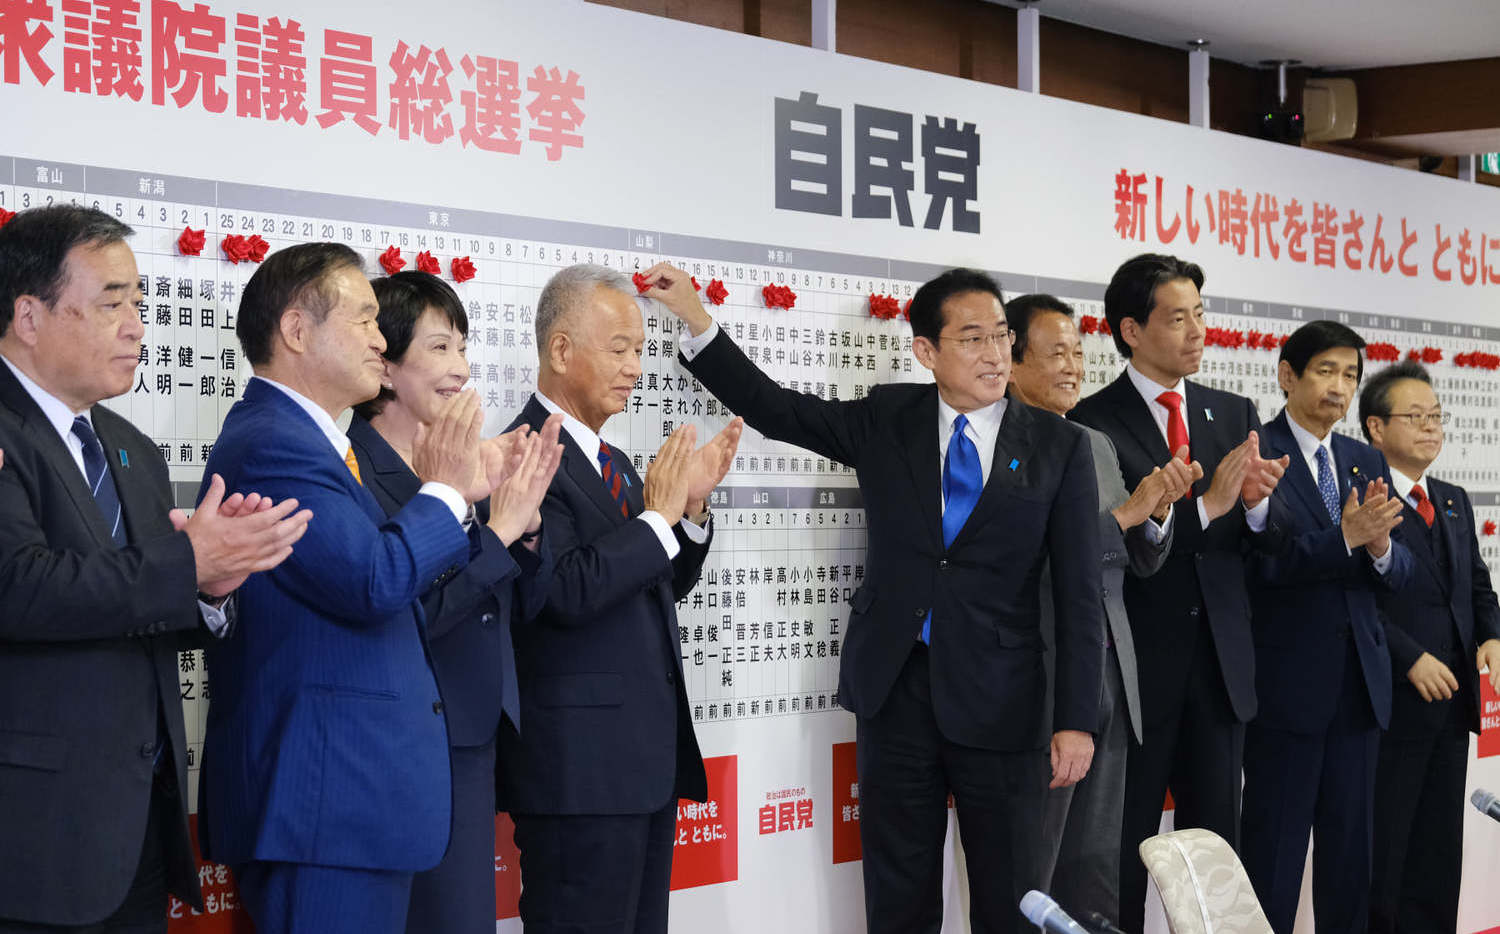 日本眾院大選後 帶動岸田文雄內閣支持率微幅上升 | 政治 | Newta